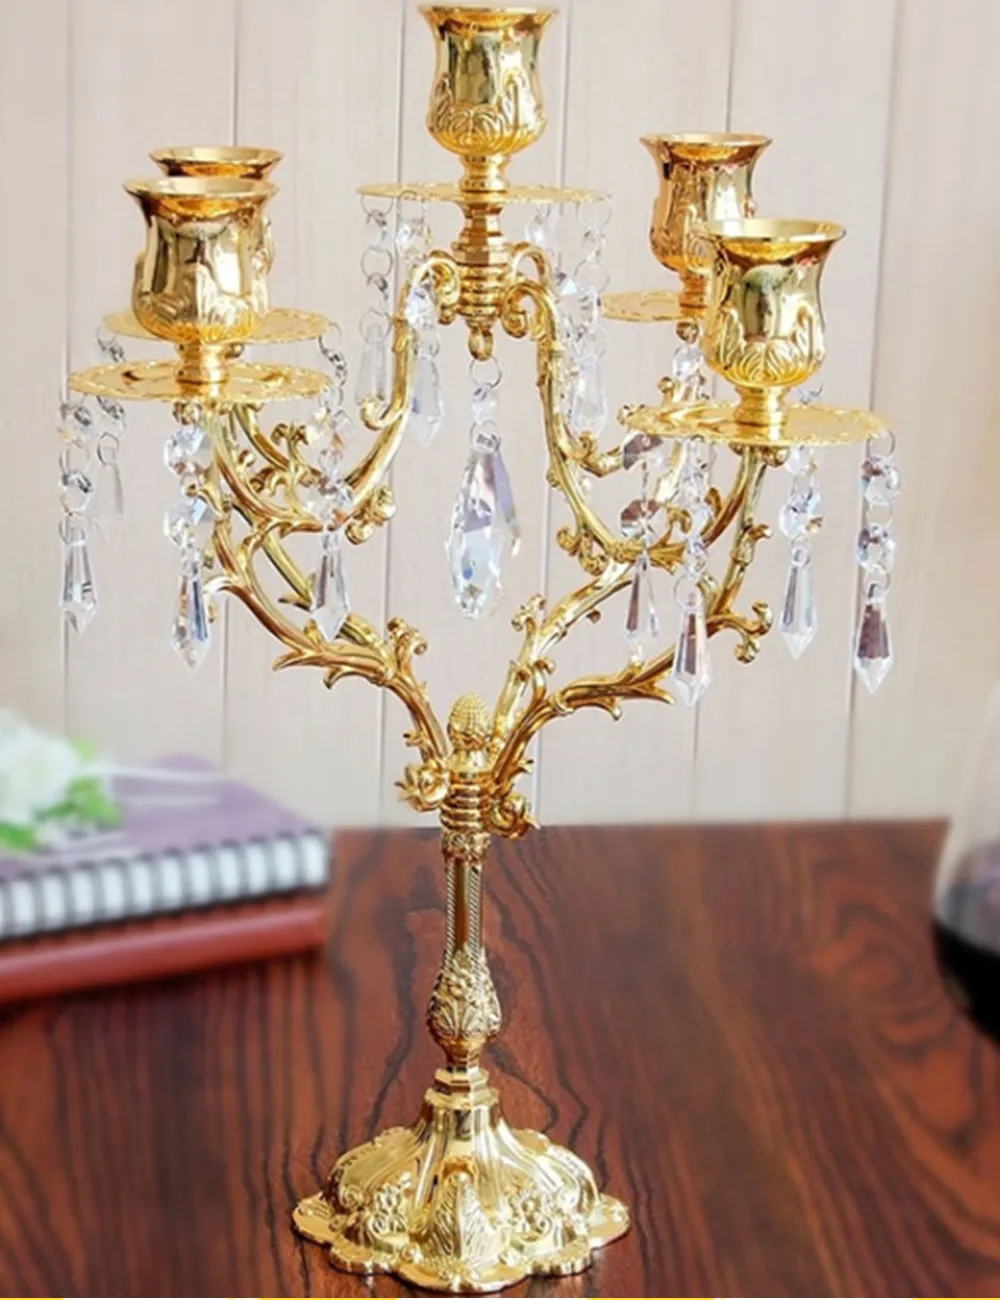 Candélabres en métal doré à 5 bras de 40 cm de hauteur, avec pendentifs en cristal, bougeoir de table de mariage, pièce maîtresse d'événement, 10 pièces